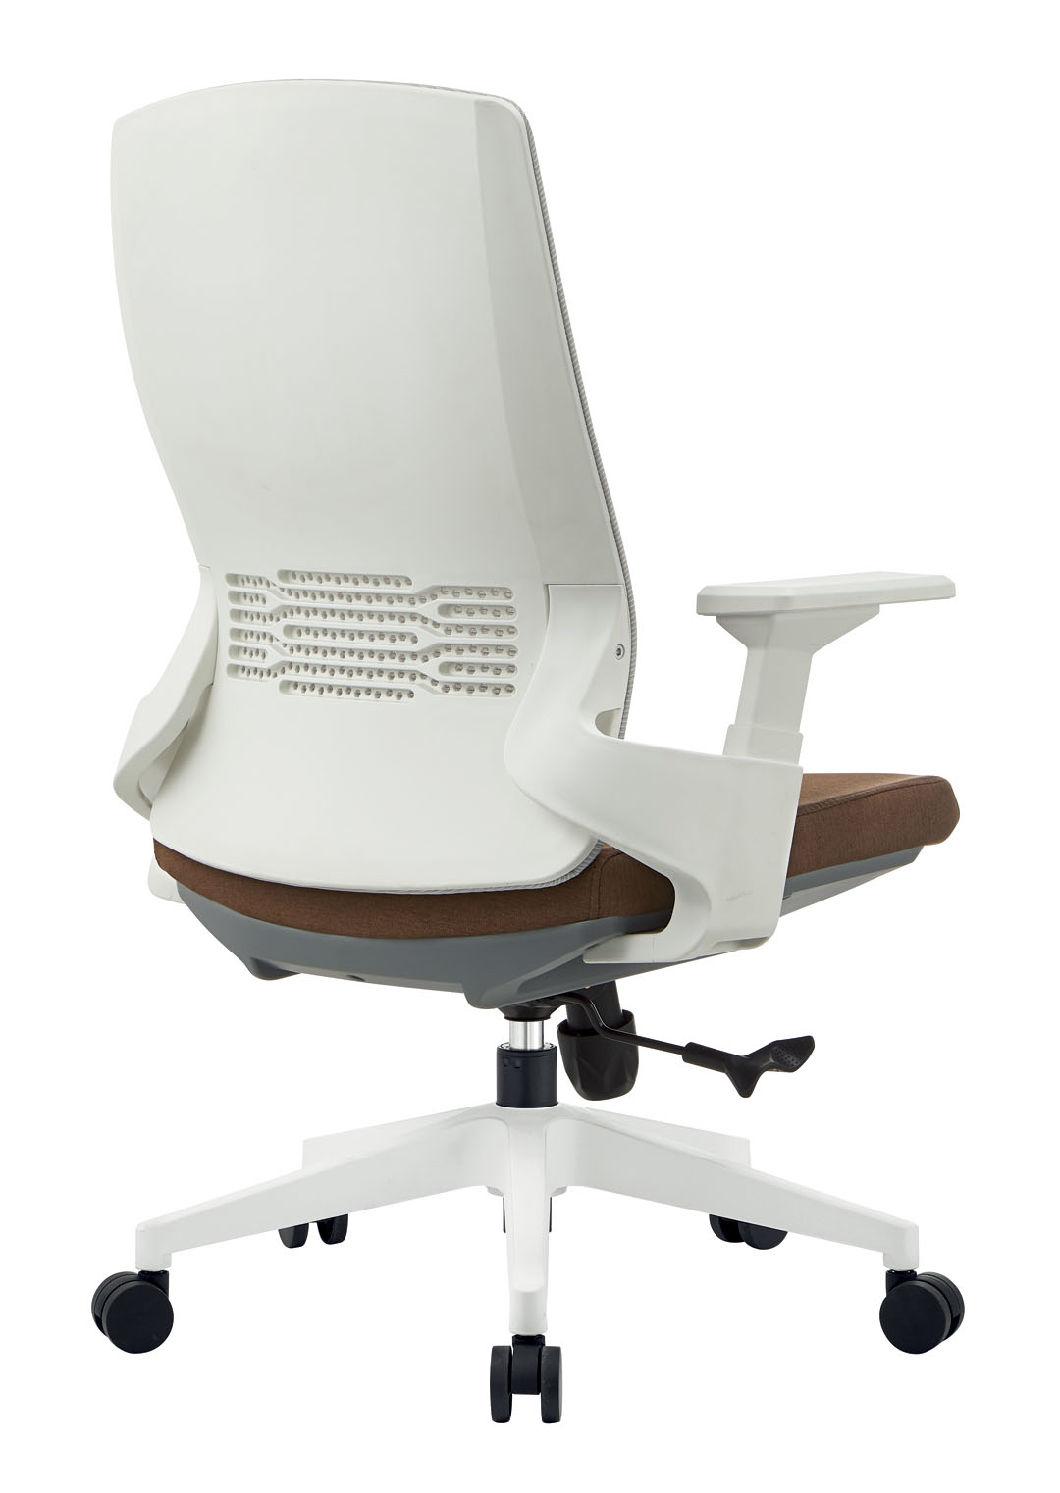 White Frame Bionic Swivel Chair Mesh Chair